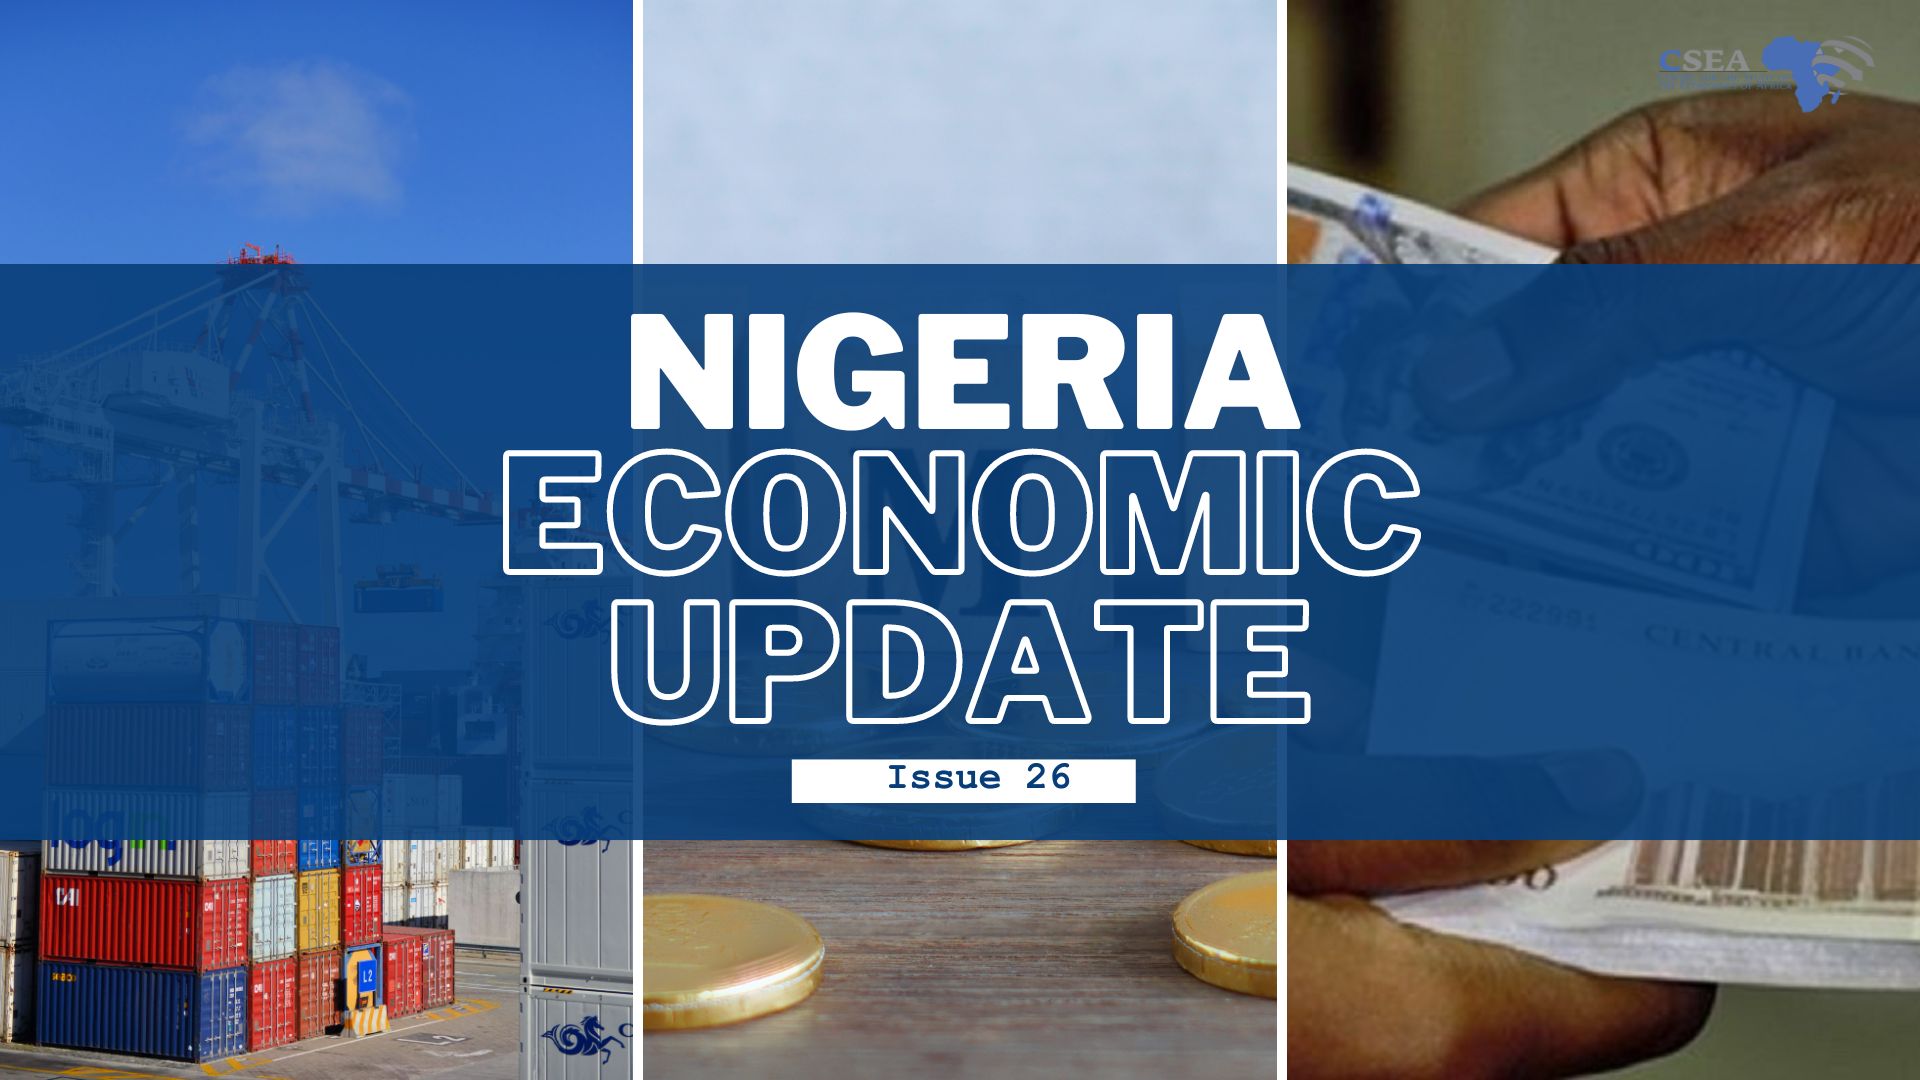 Nigeria Economic Update (Issue 26)